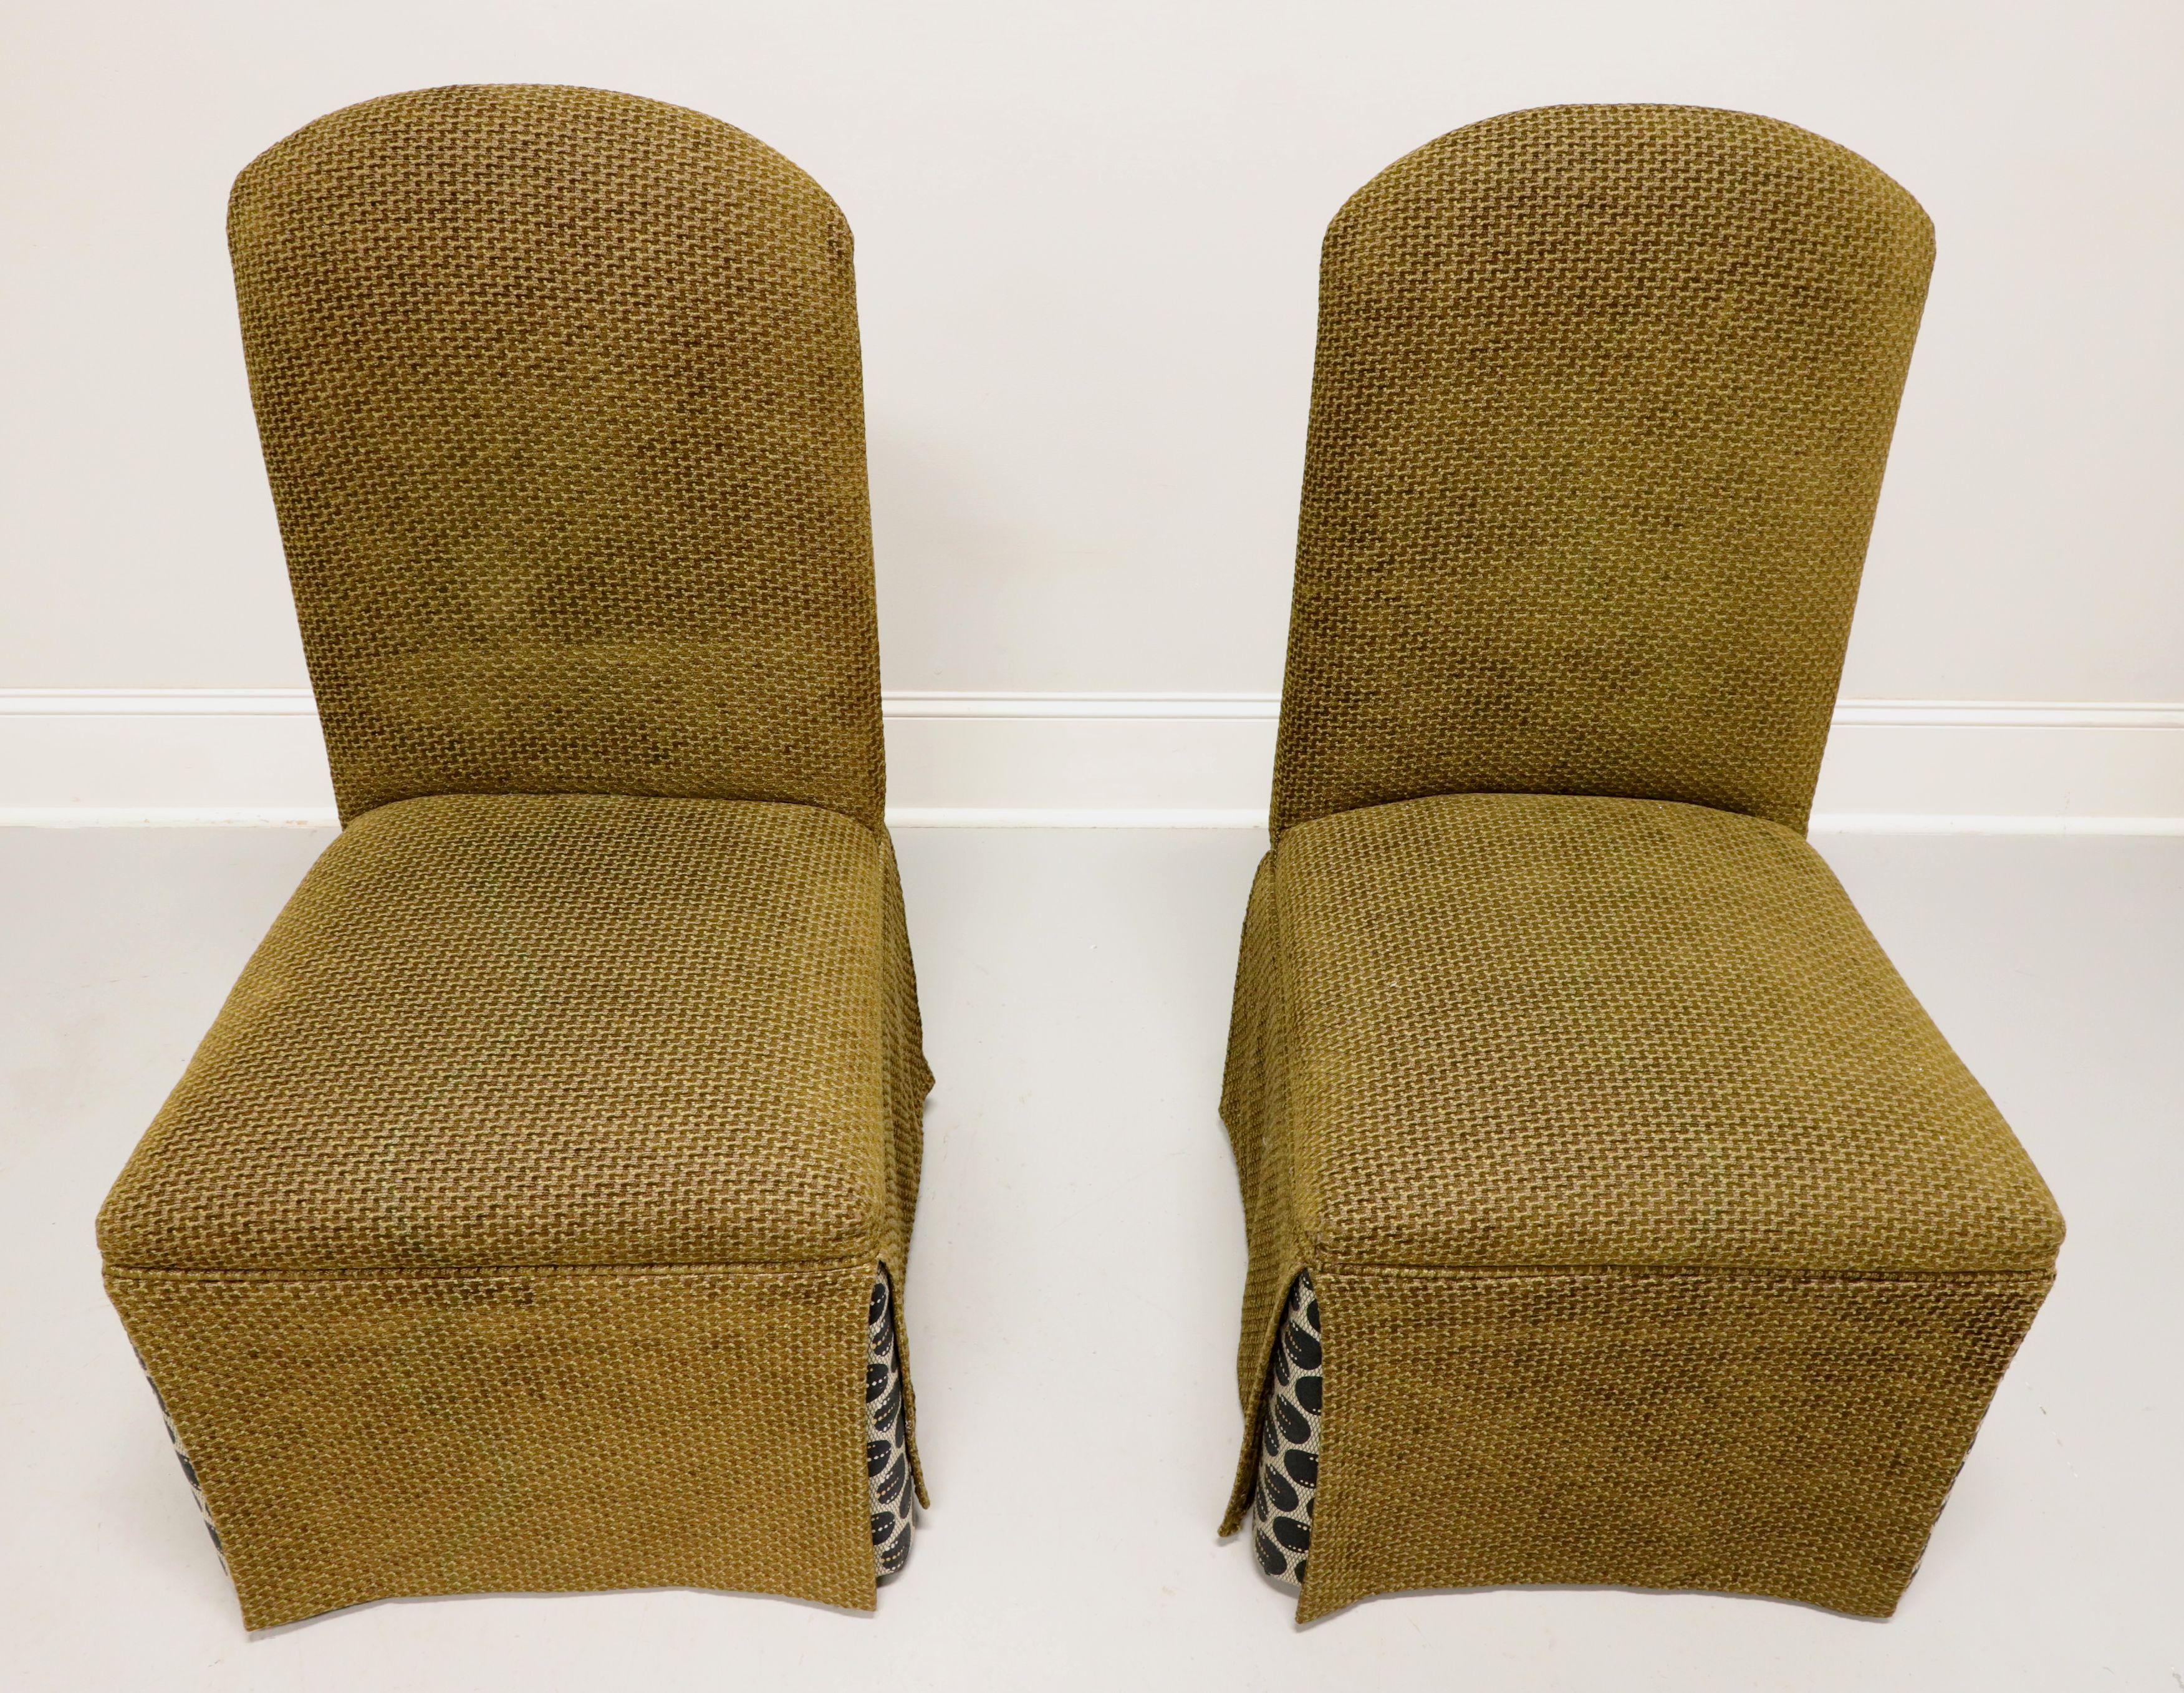 Ein Paar Parsons-Stühle im Transitional-Stil, ohne Markenzeichen, ähnliche Qualität wie Lane's. Gestell aus Massivholz, gepolstert mit olivgrünem, tweedartigem Stoff, vollflächiger Sockel mit Eckschürzen in einem kreisförmigen Muster aus Schwarz,